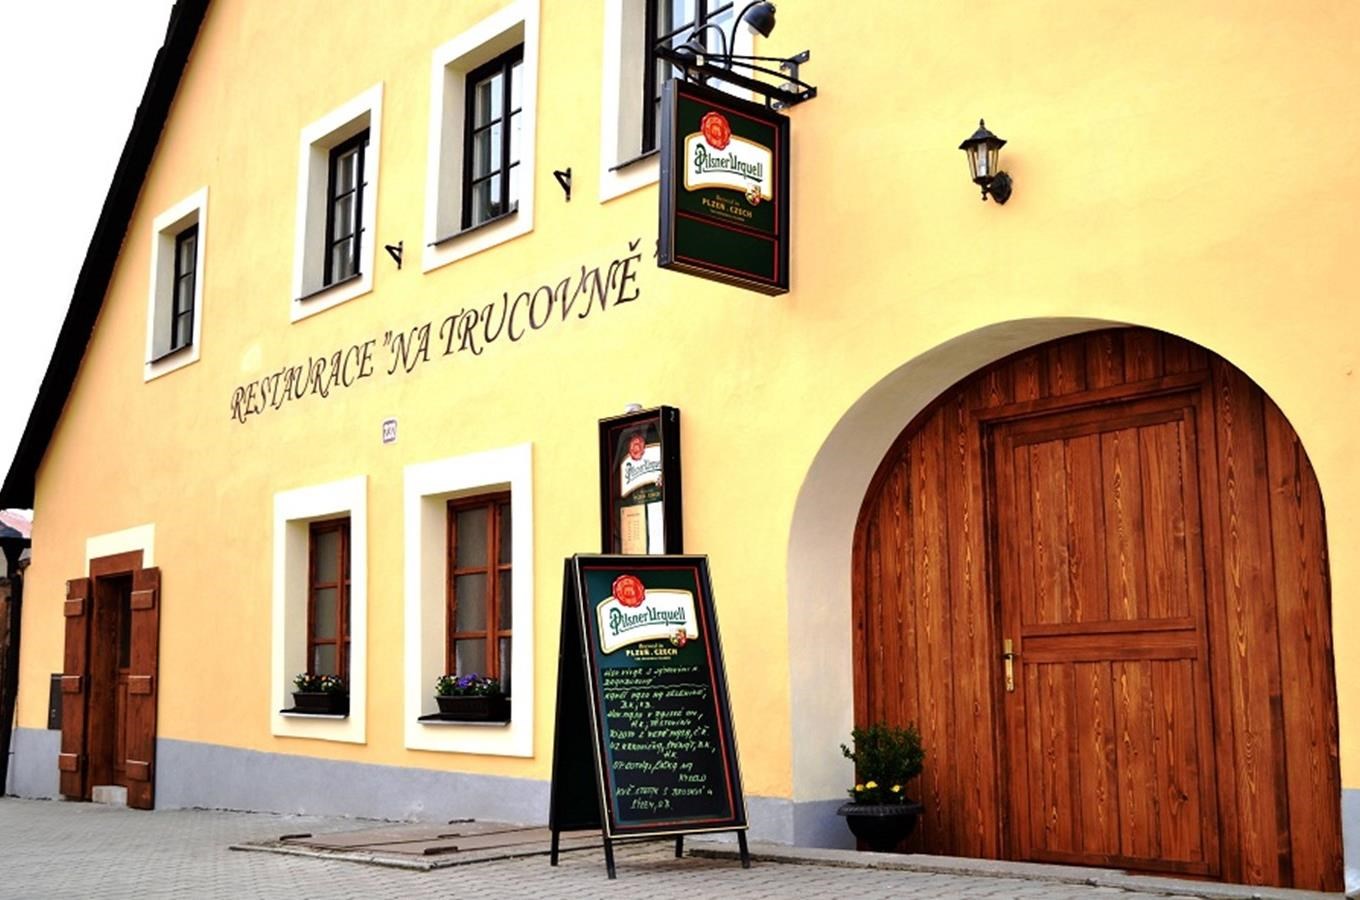 Restaurace na Trucovně